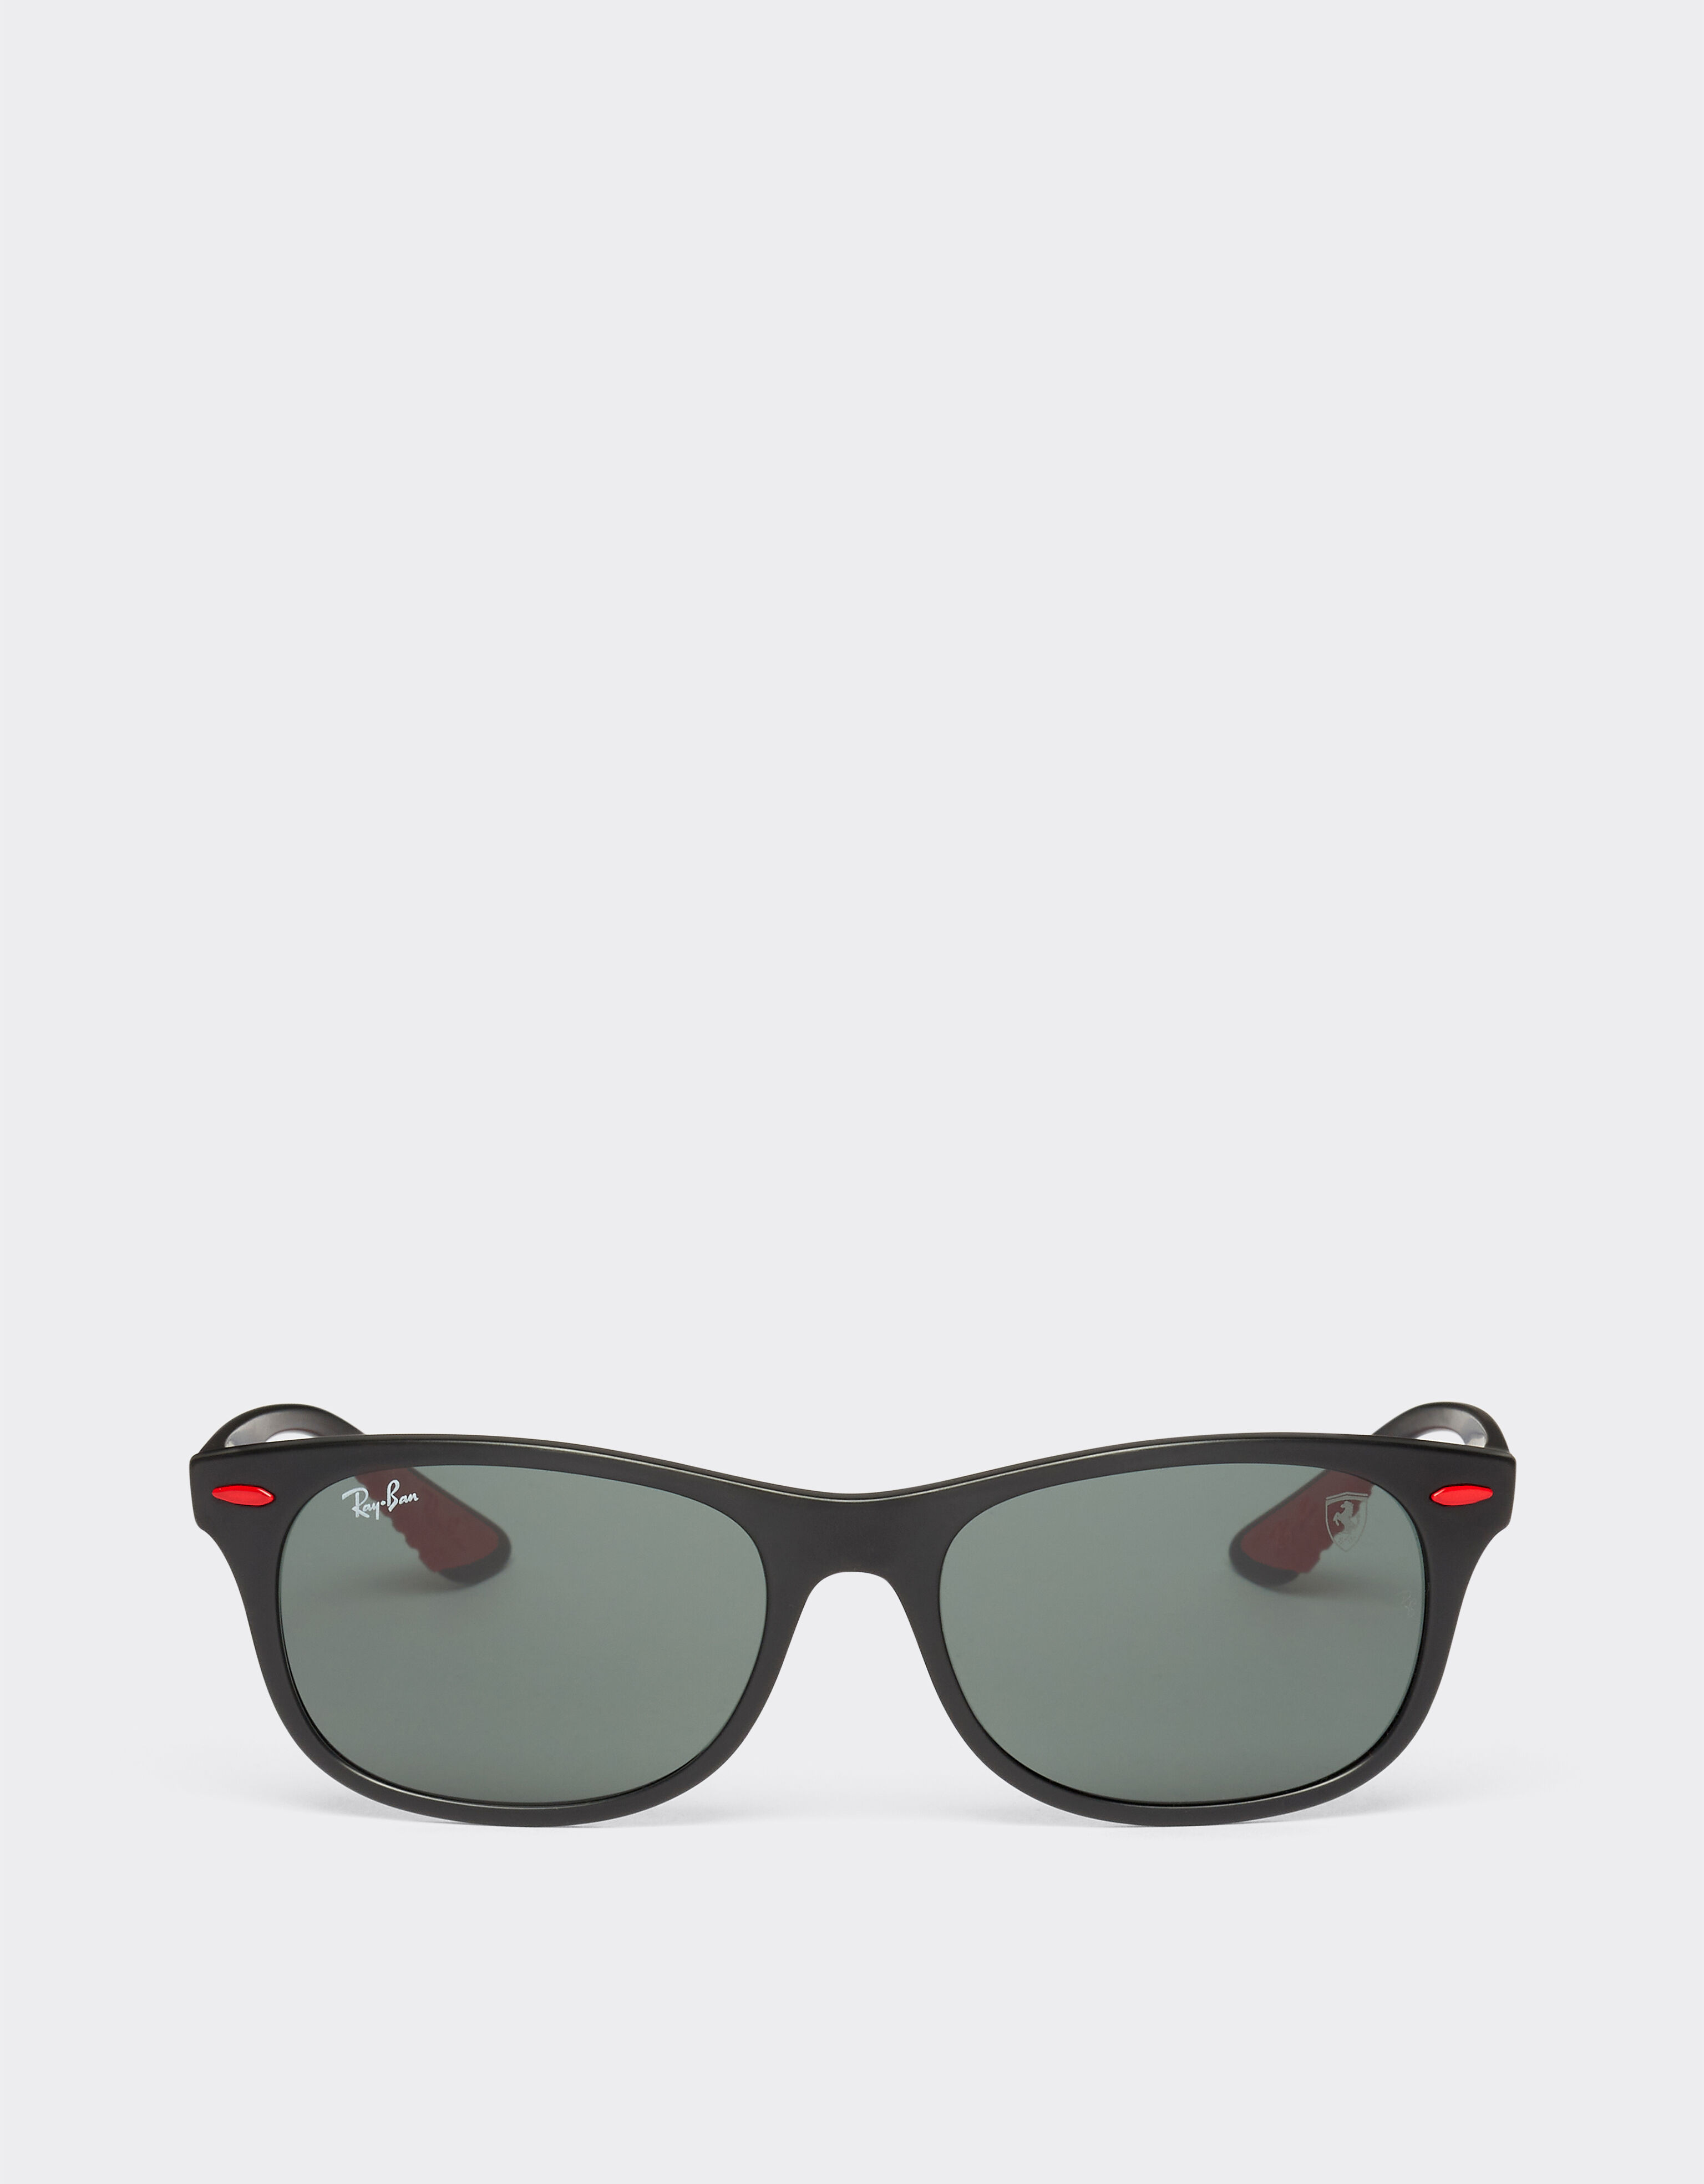 Ferrari Ray-Ban for Scuderia Ferrari 0RB4607M black sunglasses with dark green lenses Rosso Corsa F1133f